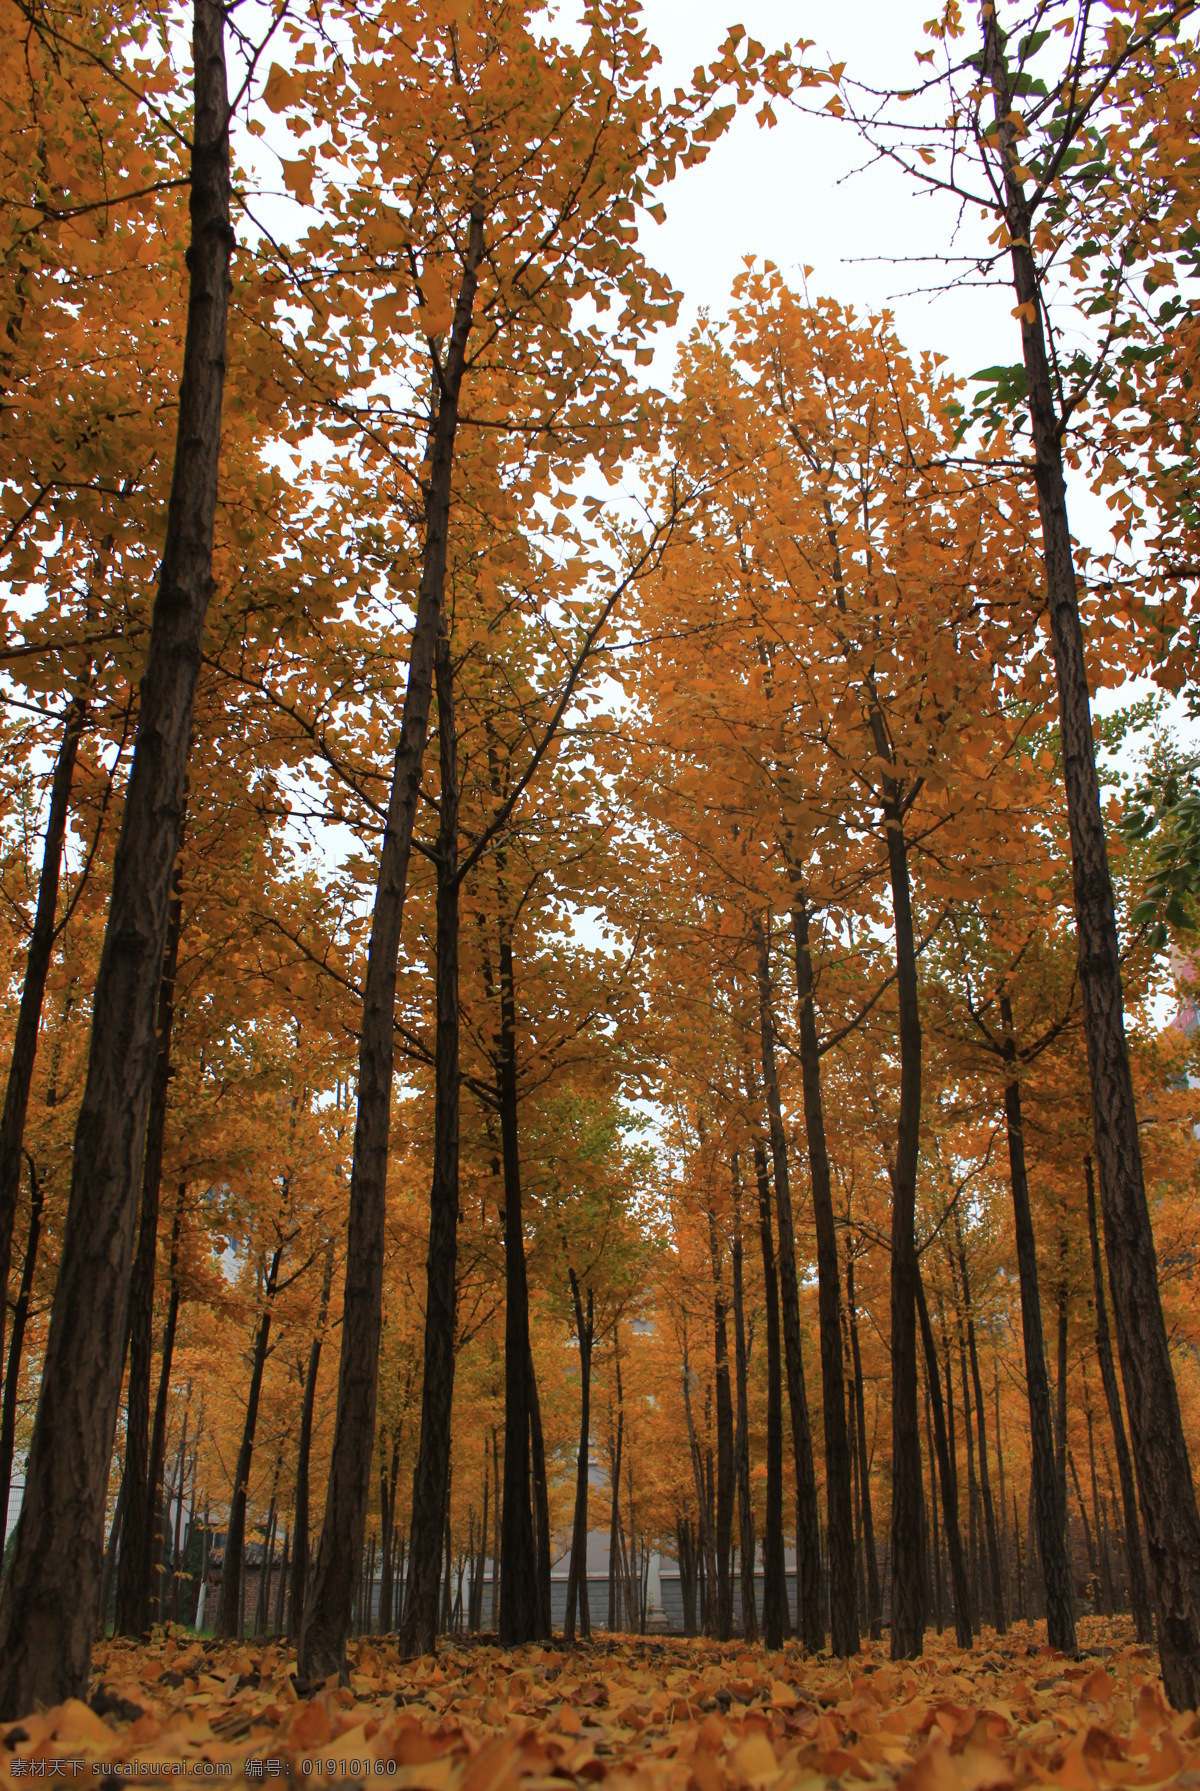 秋天的树叶 黄色 叶子 纵向 银杏树 落叶 银杏叶 自然风景 自然景观